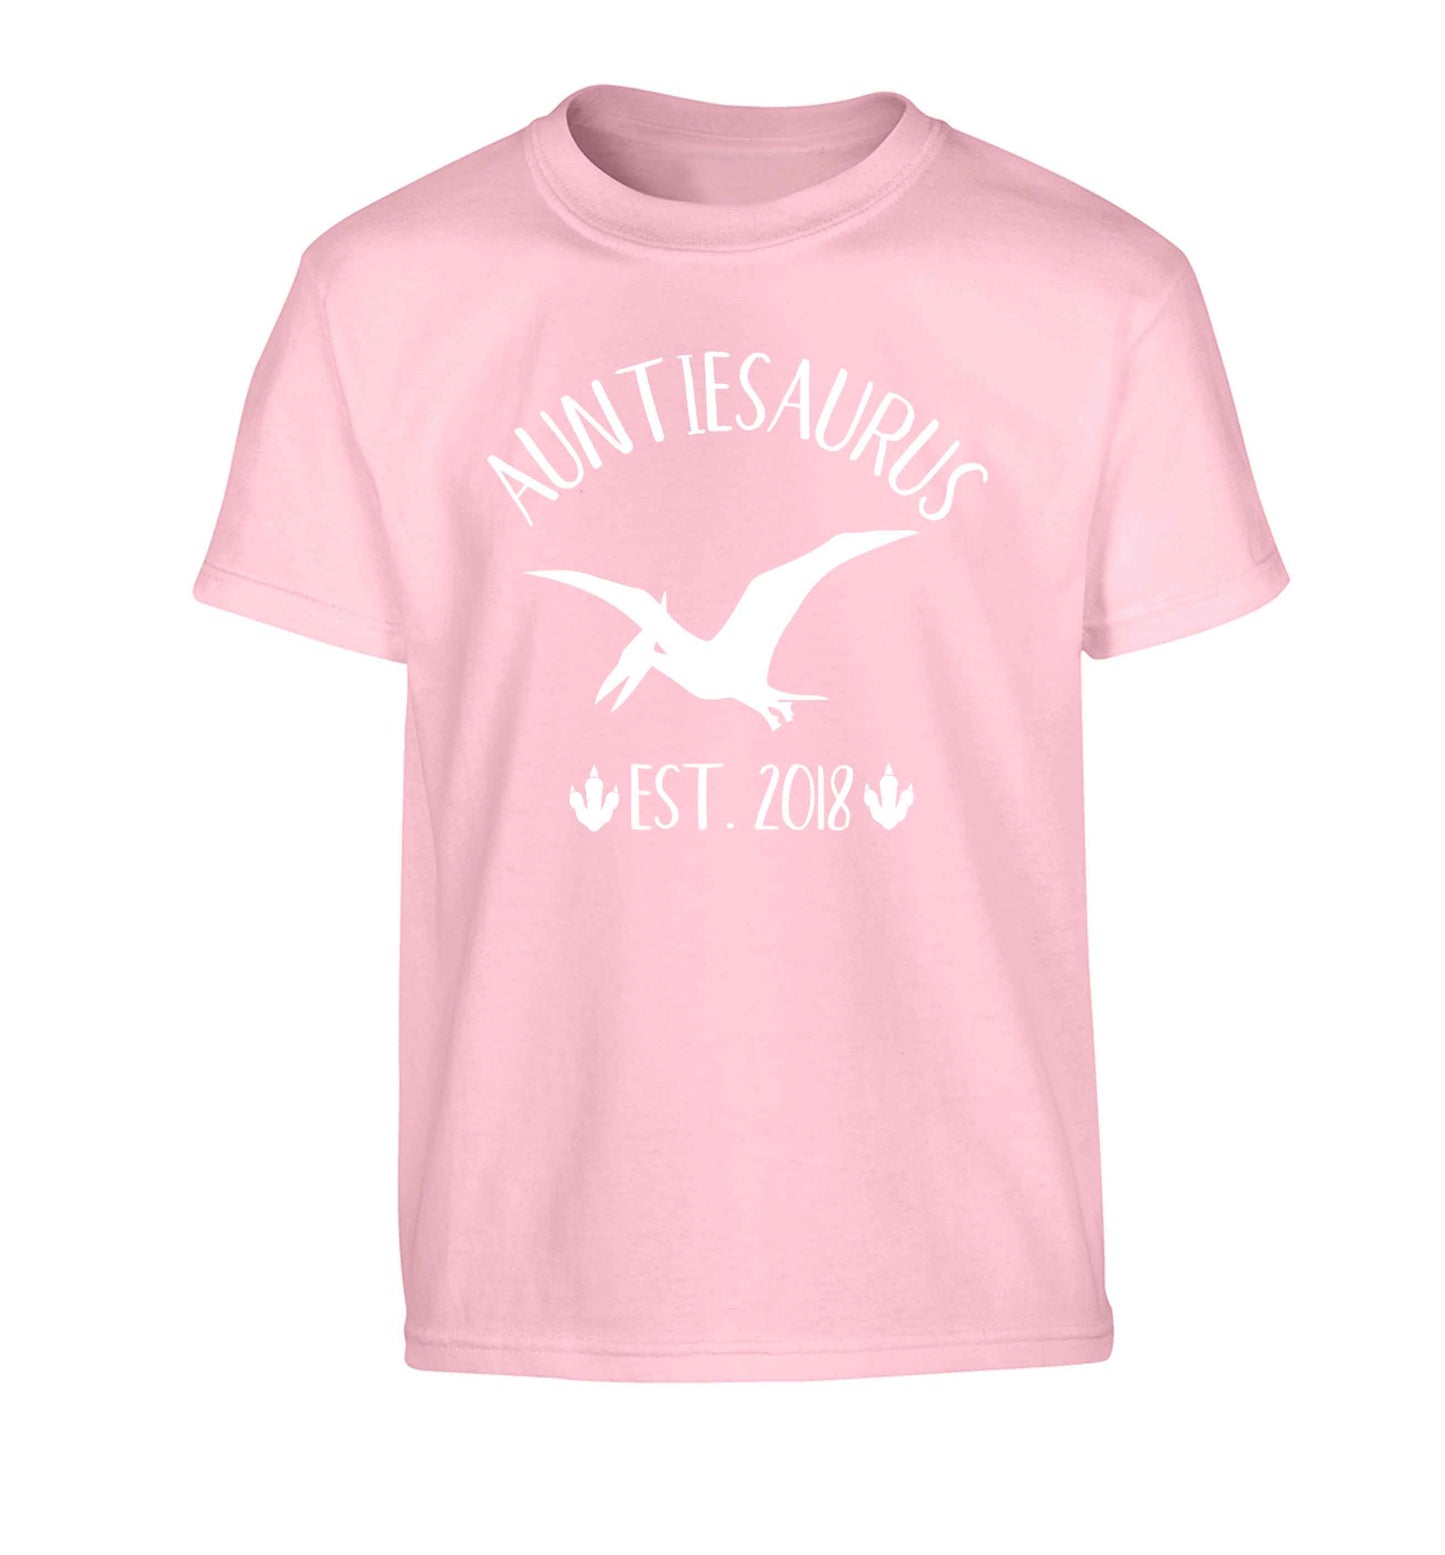 Personalised auntiesaurus since (custom date) Children's light pink Tshirt 12-13 Years